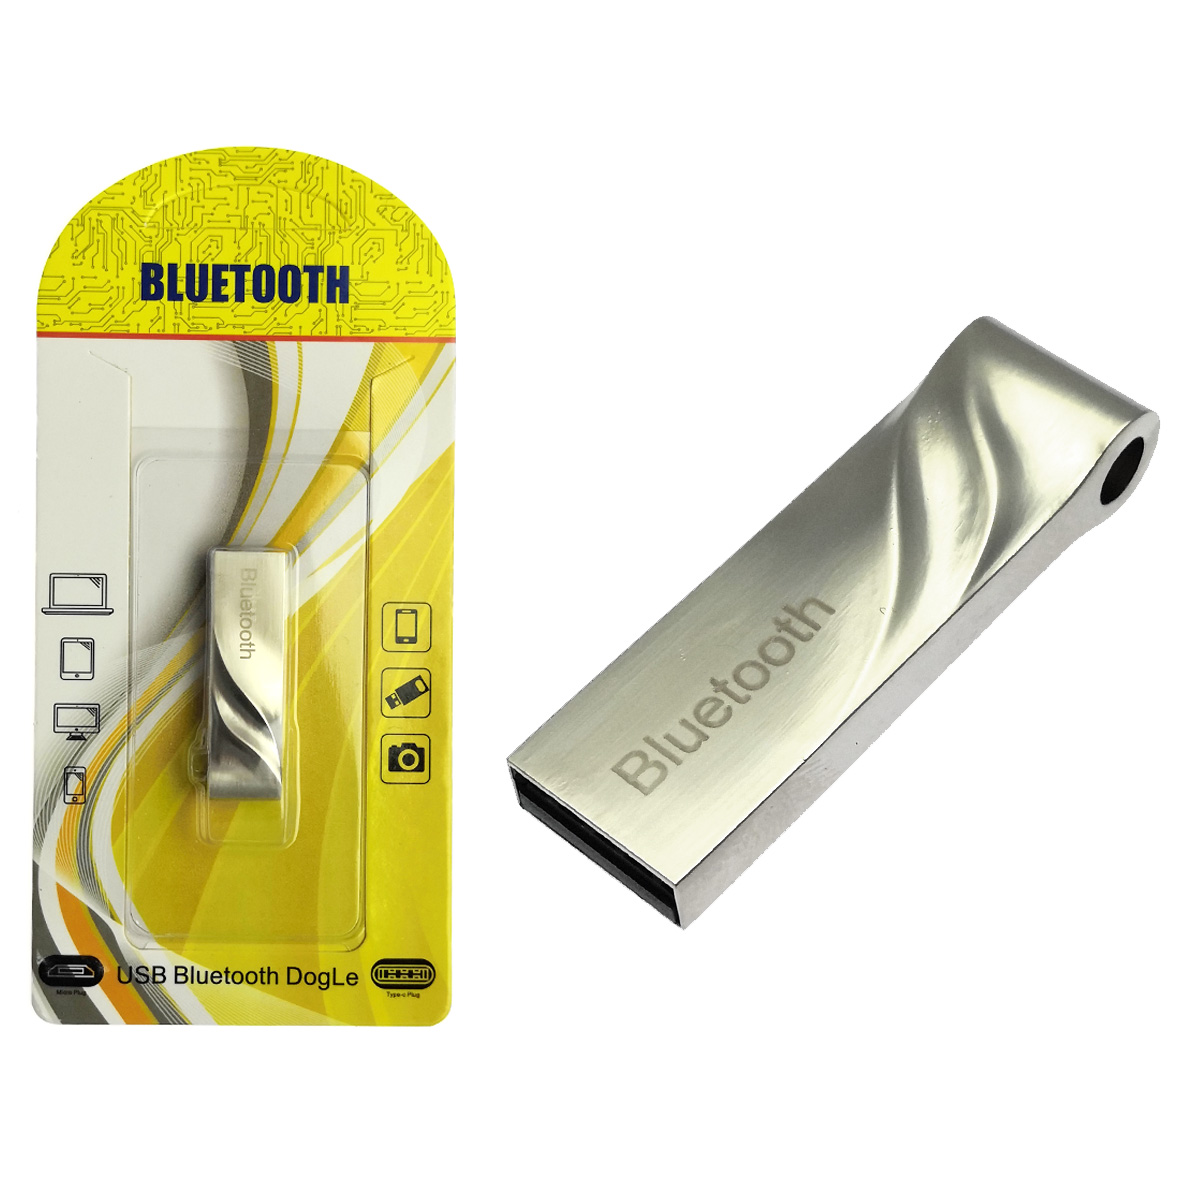 USB 2.0 Bluetooth адаптер 4.0+ERD LONG, с поддержкой протоколов A2DP, AVRCP, HFP и HSP, радиус действия 8-10 метров, цвет серебристый